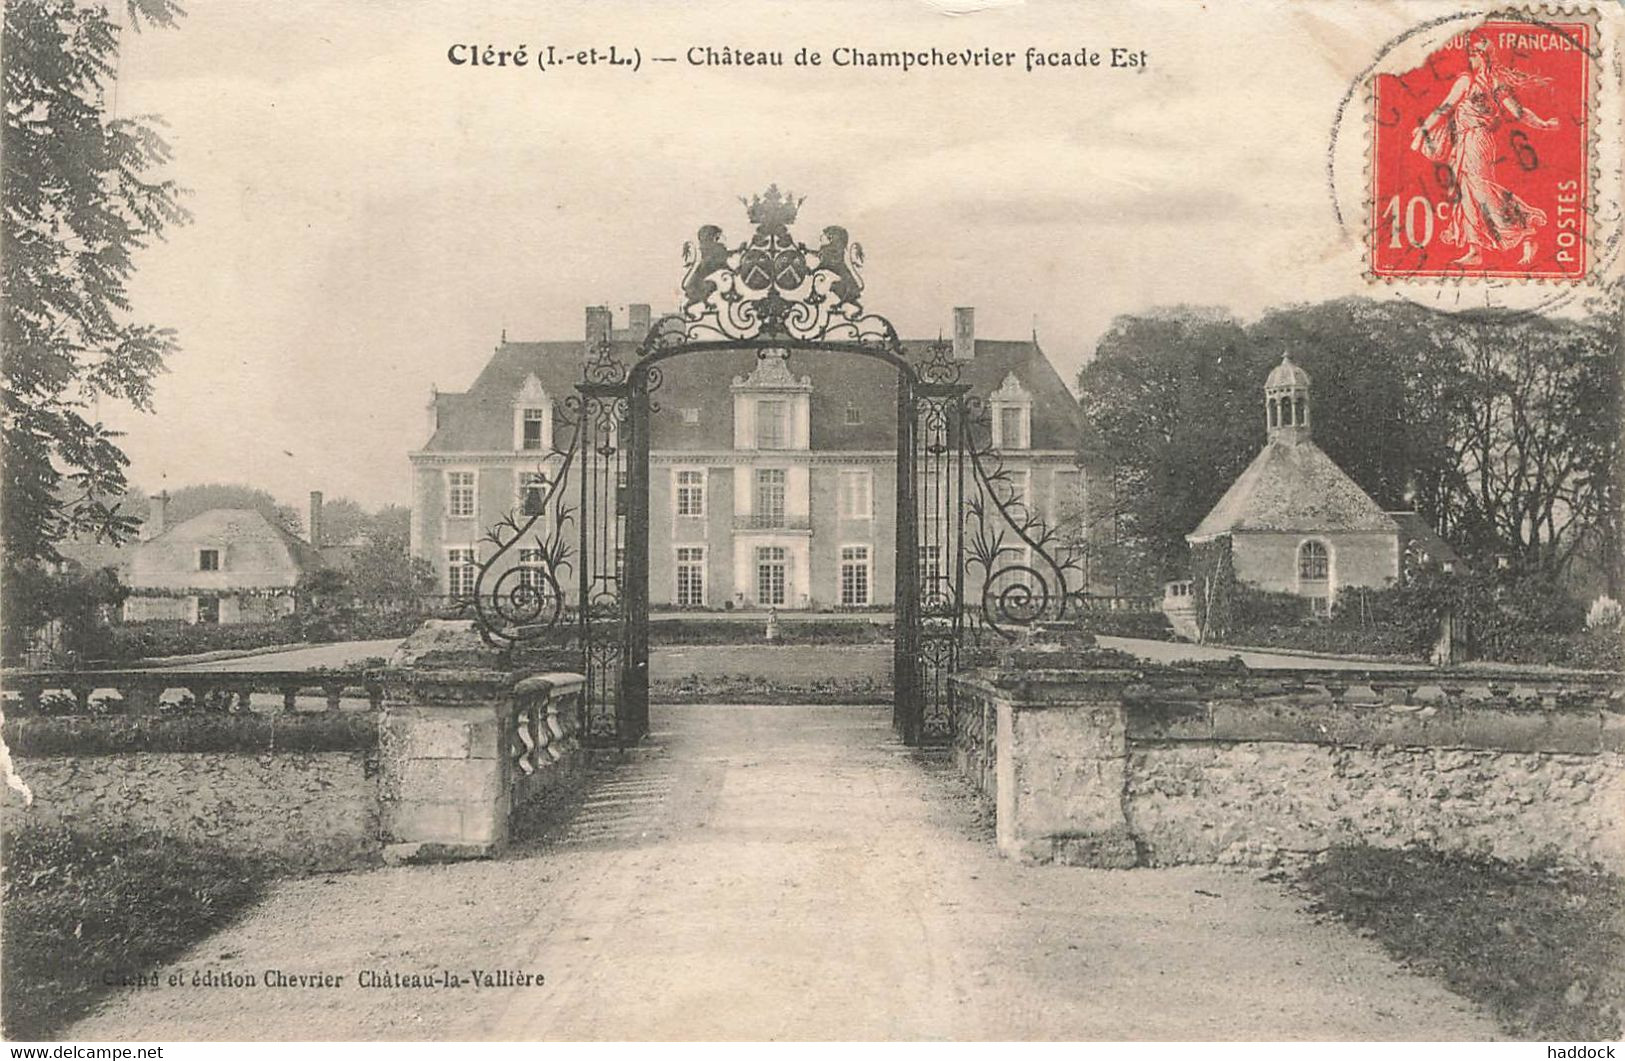 CLERE : CHATEAU DE CHAMPCHEVRIER FACADE EST - Cléré-les-Pins